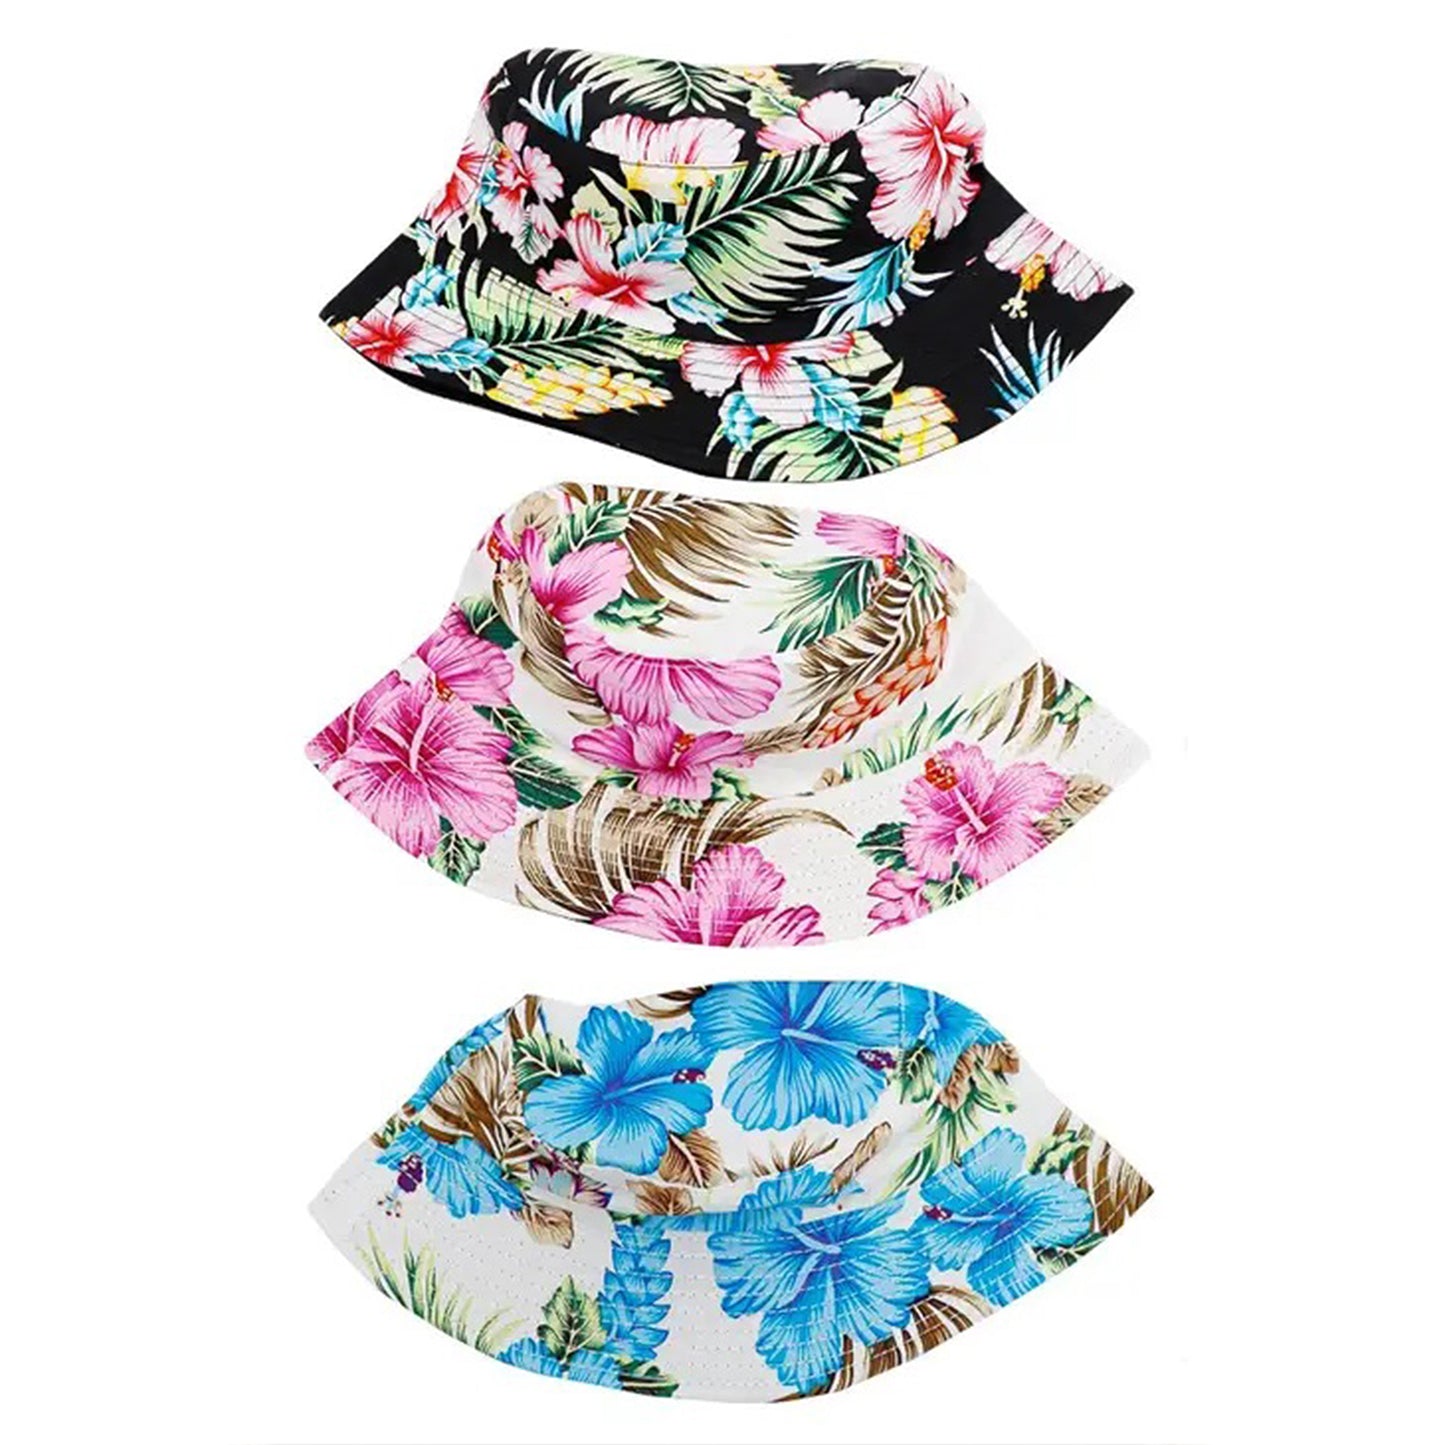 knautschbarer Wendehut, Sonnenhut mit Blumen Muster- Hut Angler Outdoor Hut aus Canvas, Unisex für Damen, Herren & Kinder